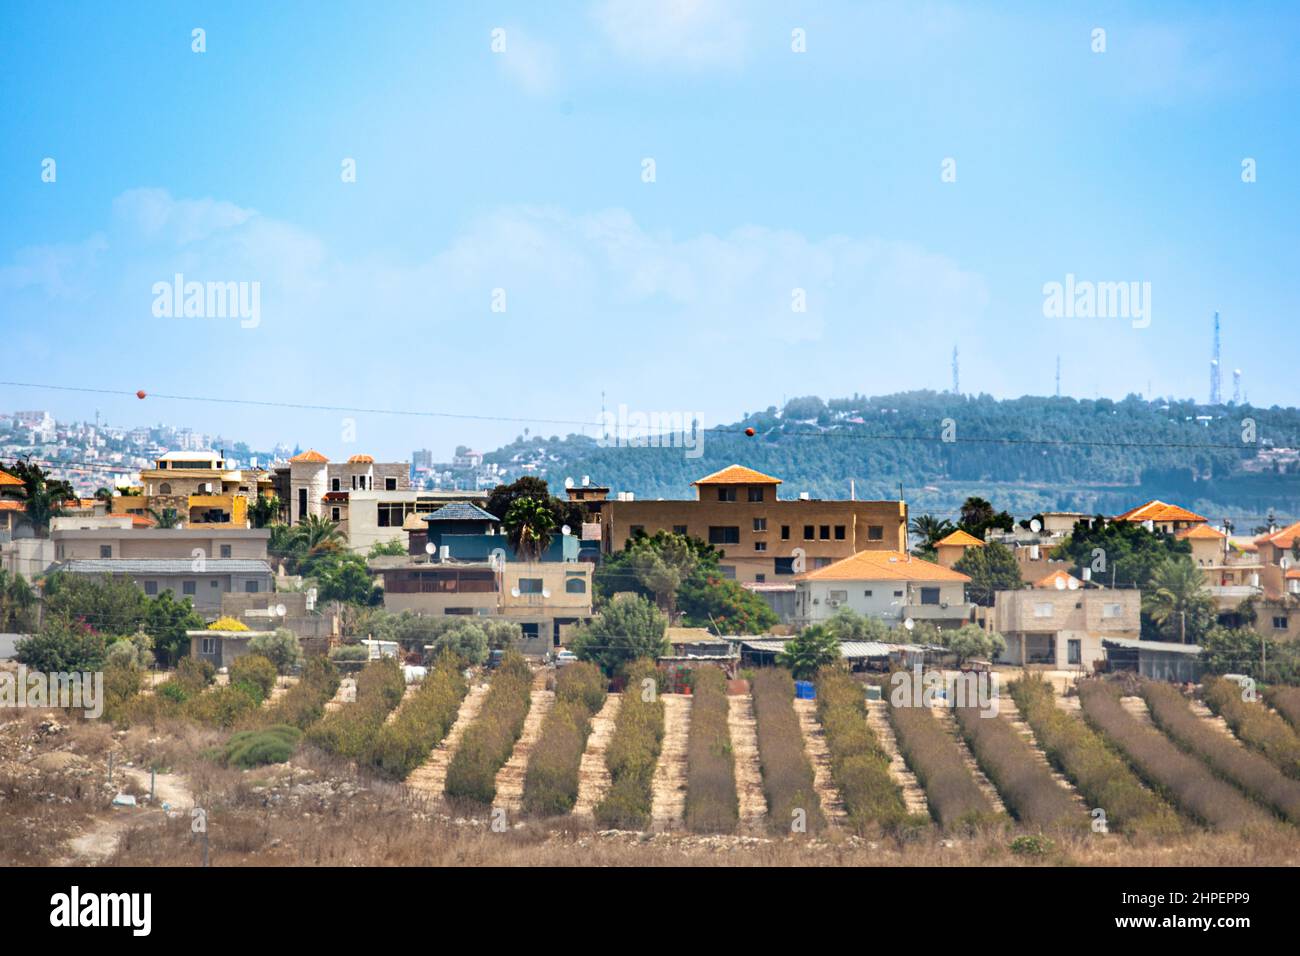 Una aldea palestina en Israel Foto de stock